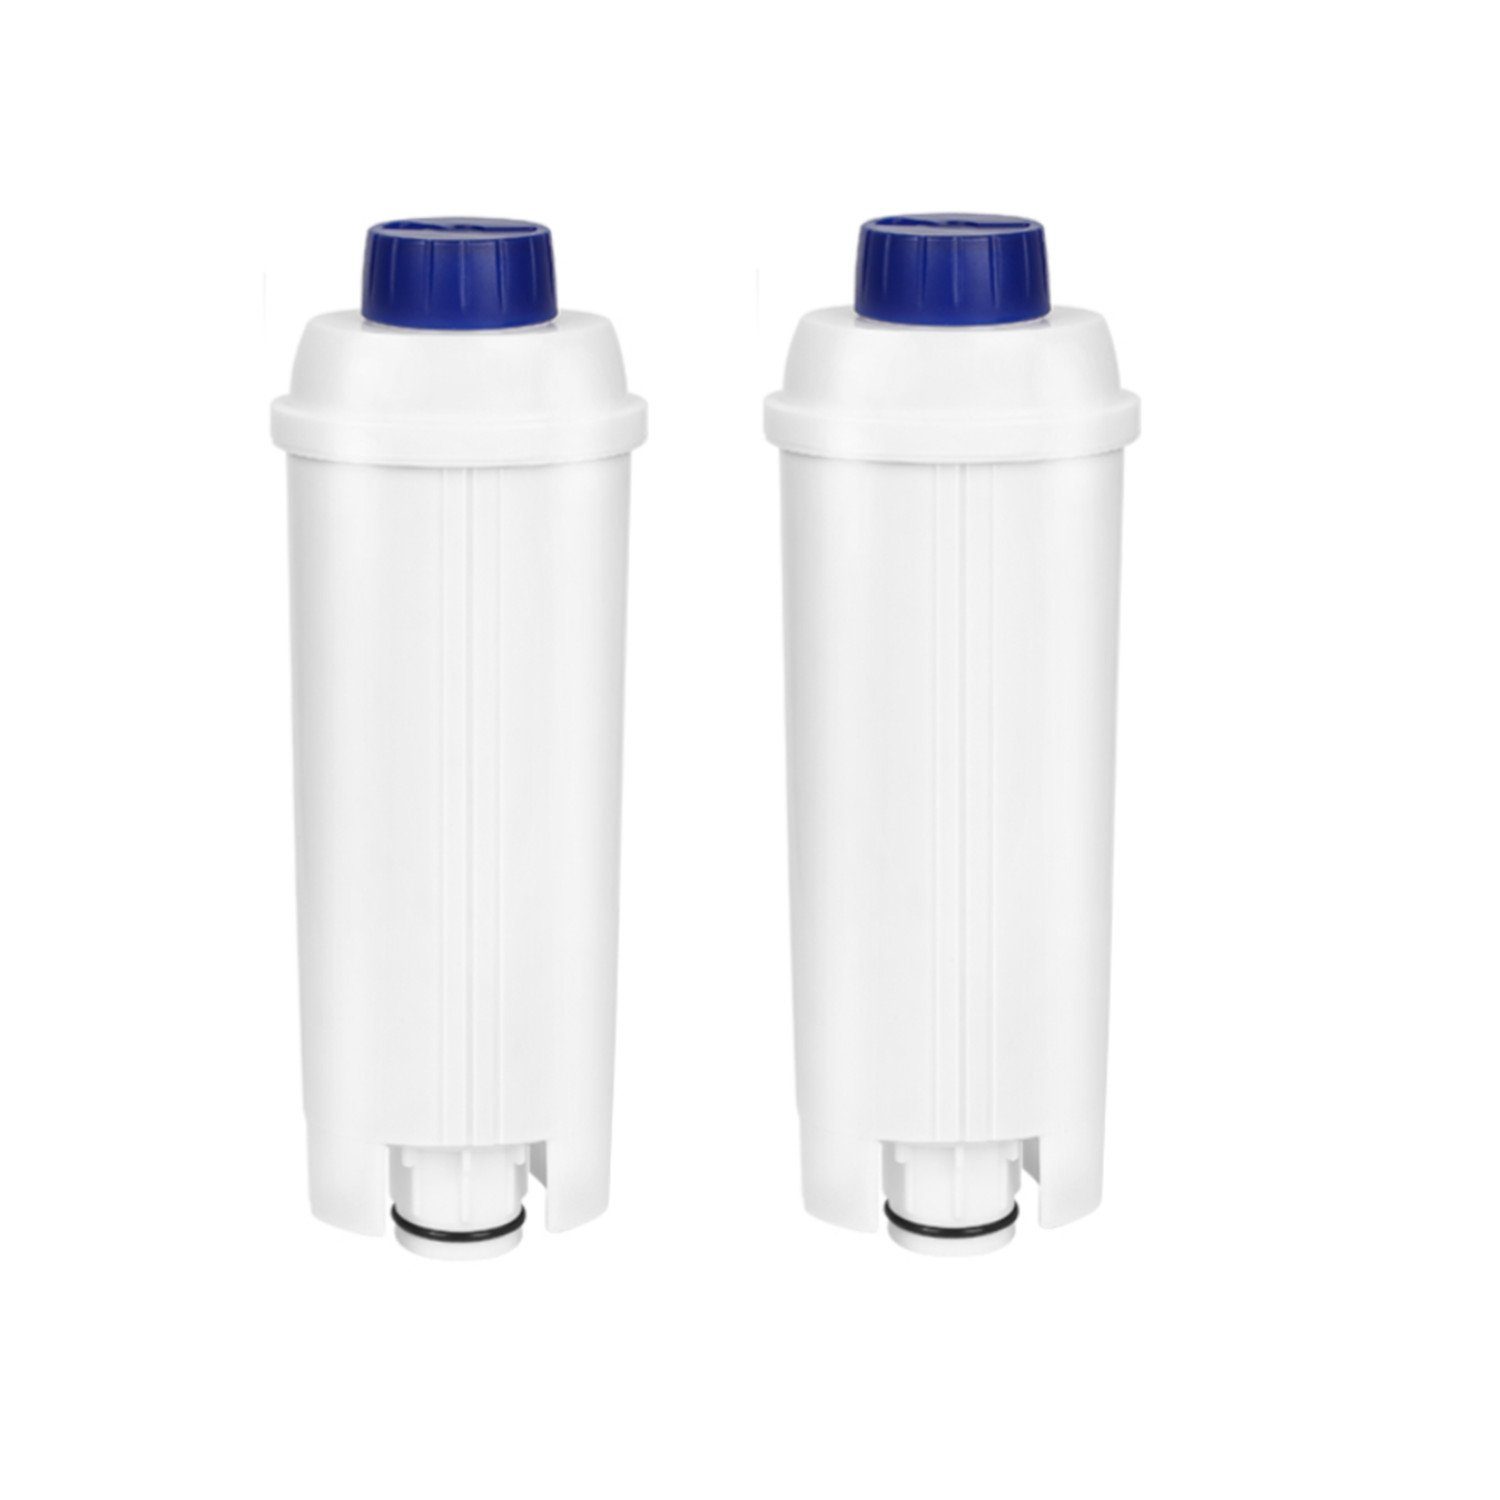 Clanmacy Wasserfilter 2-10x Wasserfilter Wasser Delonghi Delonghi für Liter DLSC002 60 DLSC002 für für EC680 EC800 ECAM ETAM für mit Aktivkohle kompatibel Zubehör